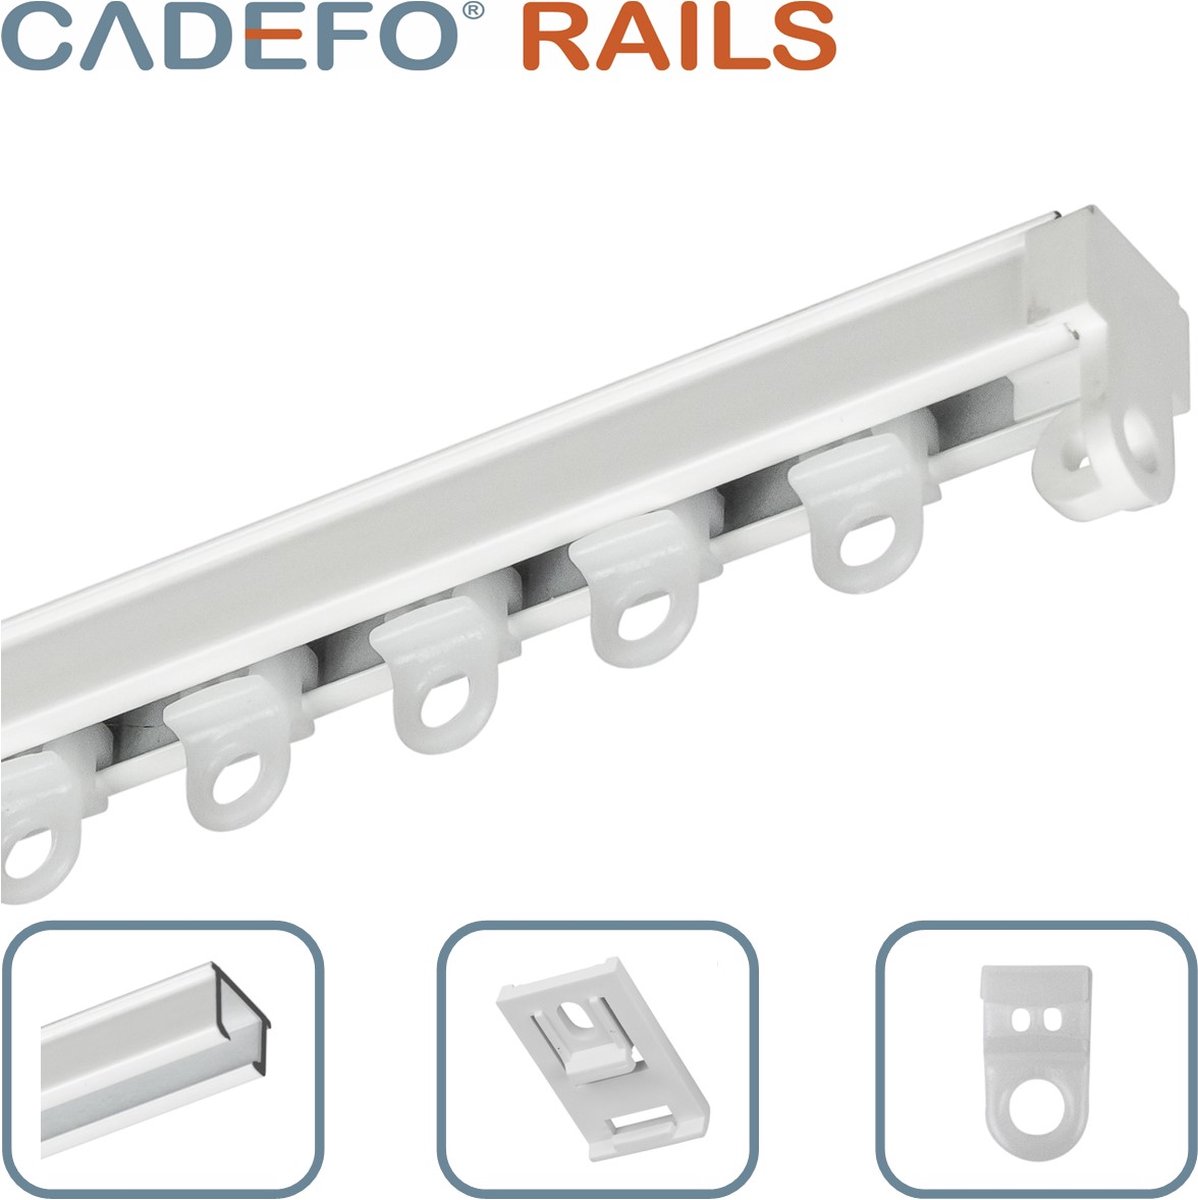 CADEFO RAILS (501 - 550 cm) Gordijnrails - Compleet op maat! - UIT 1 STUK - Leverbaar tot 6 meter - Plafondbevestiging - Lengte 512 cm